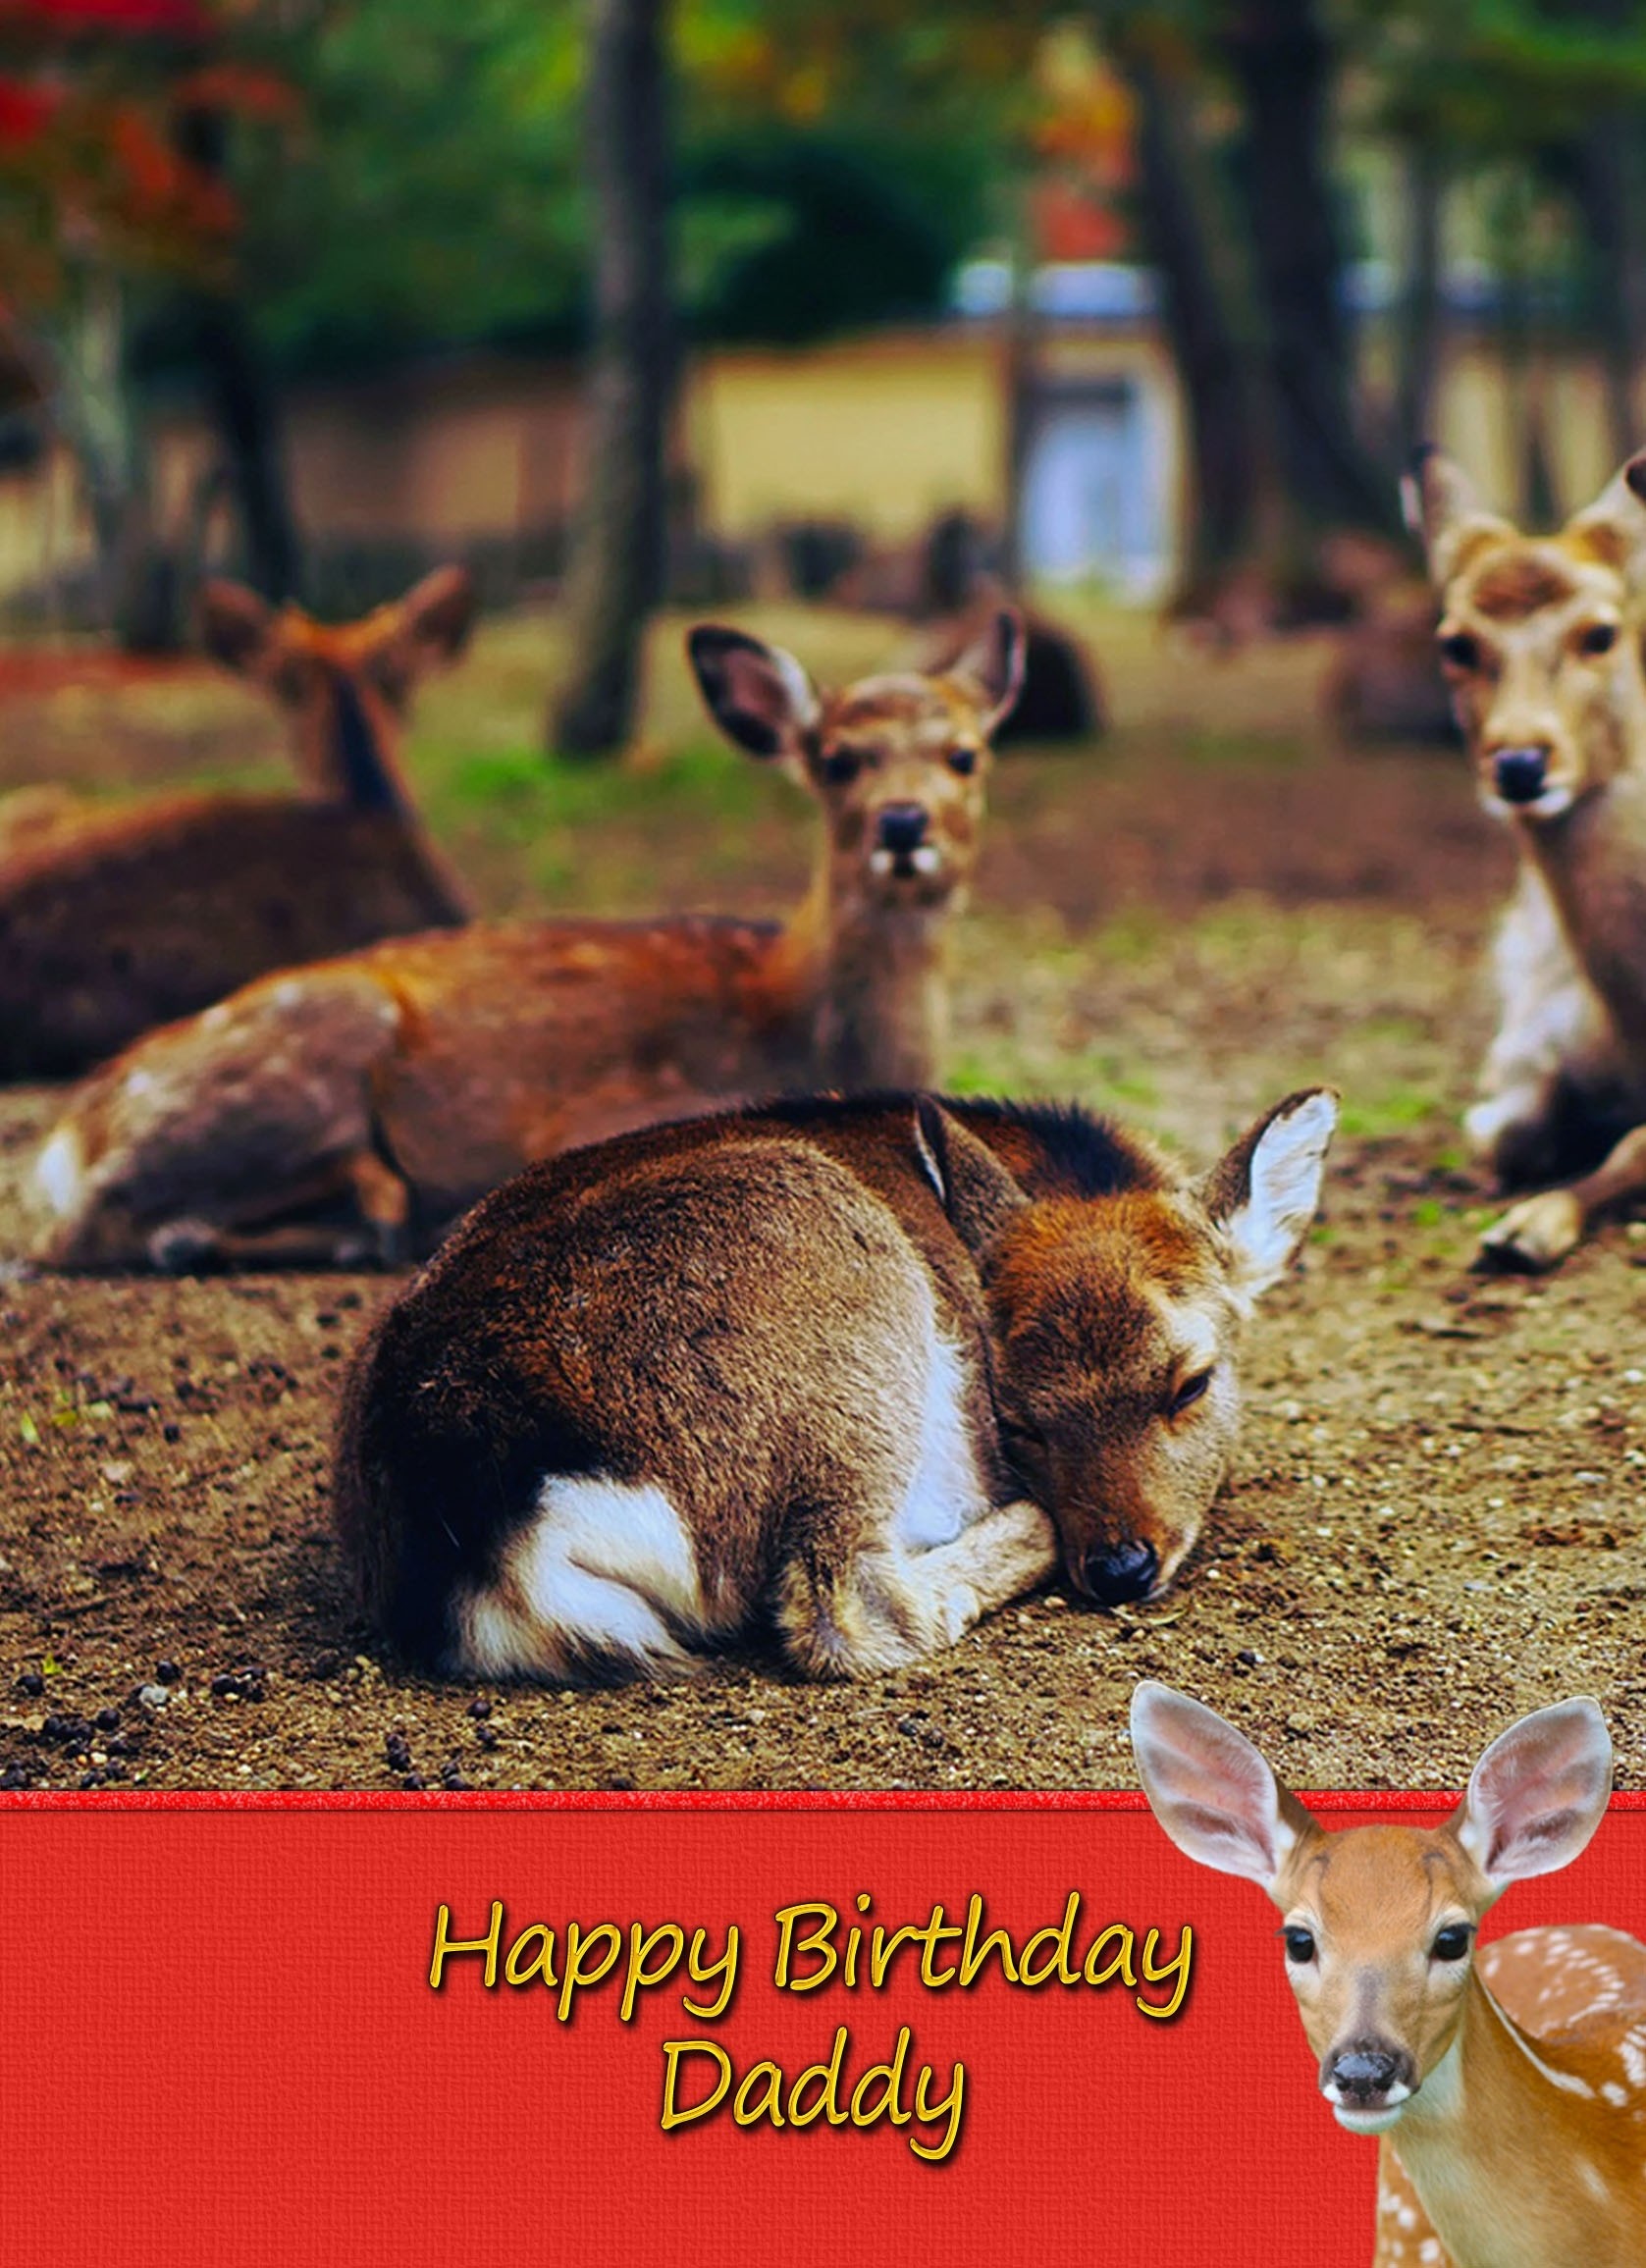 Personalised Deer Card